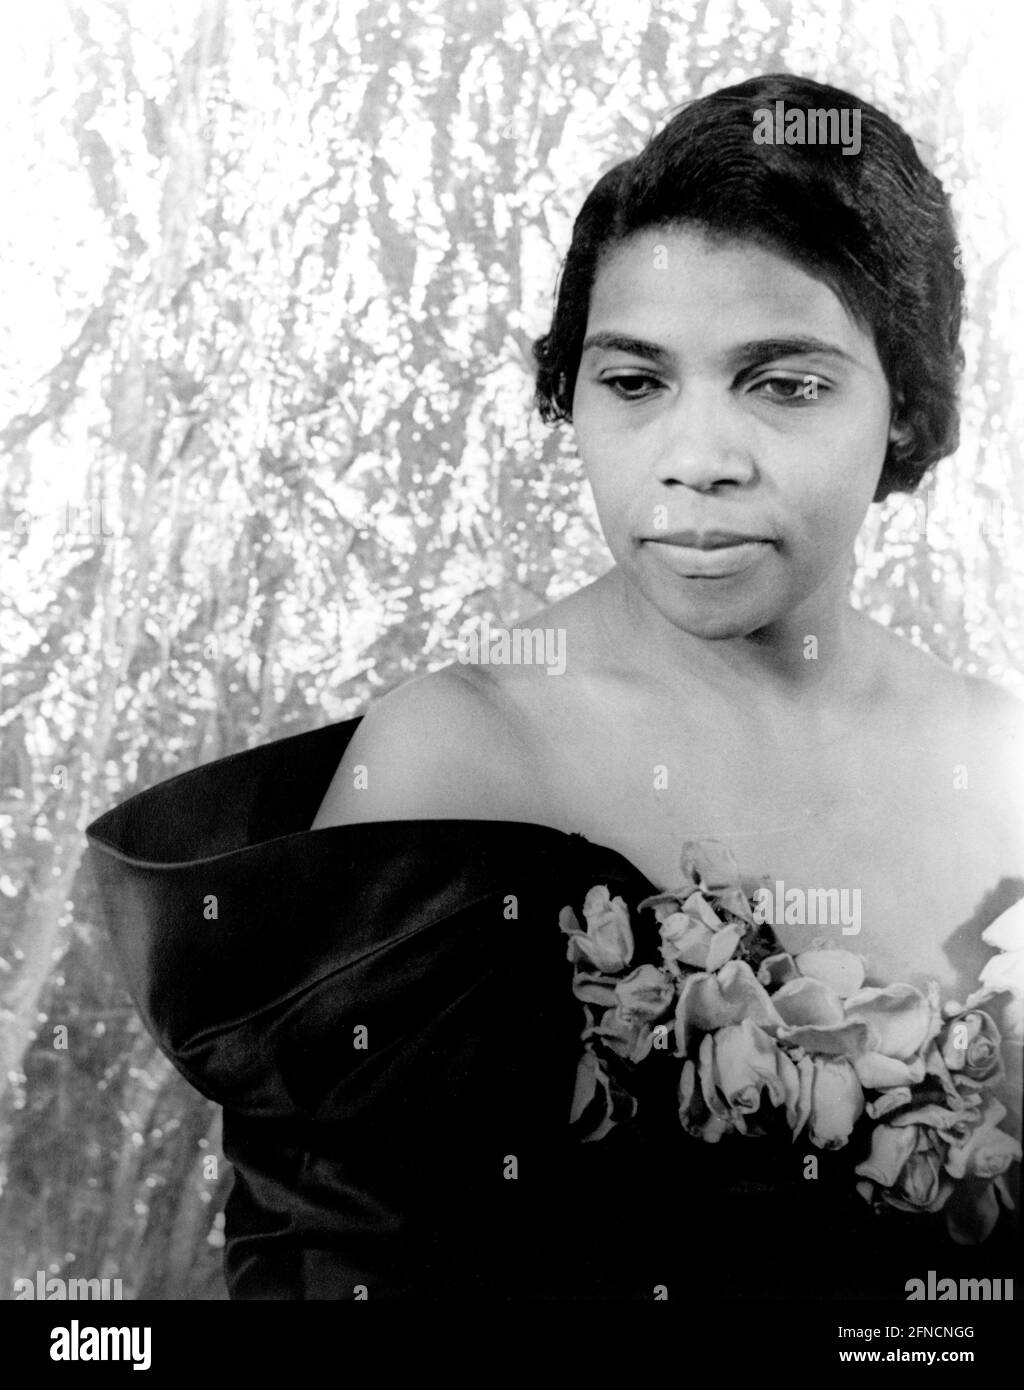 Marian Anderson. Portrait de la contralto américaine, Marian Anderson (1897-1993). Photo de Carl van Vechten, 1940 Banque D'Images